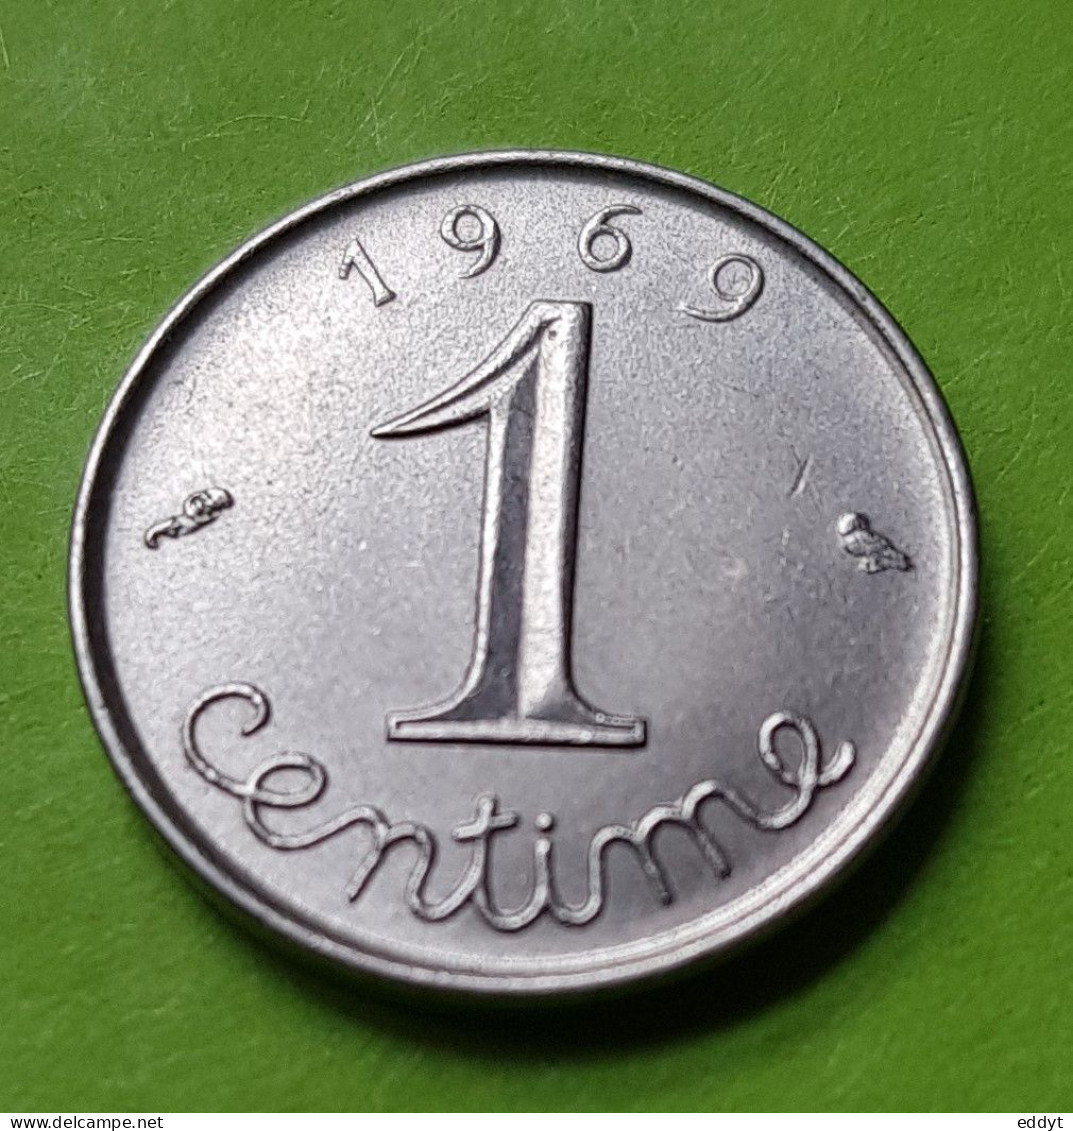 Monnaie, Pièce FRANCE - 1 Centime 1969 " 9 Plus Long " - Epi Blé - République Française - 1 Centime